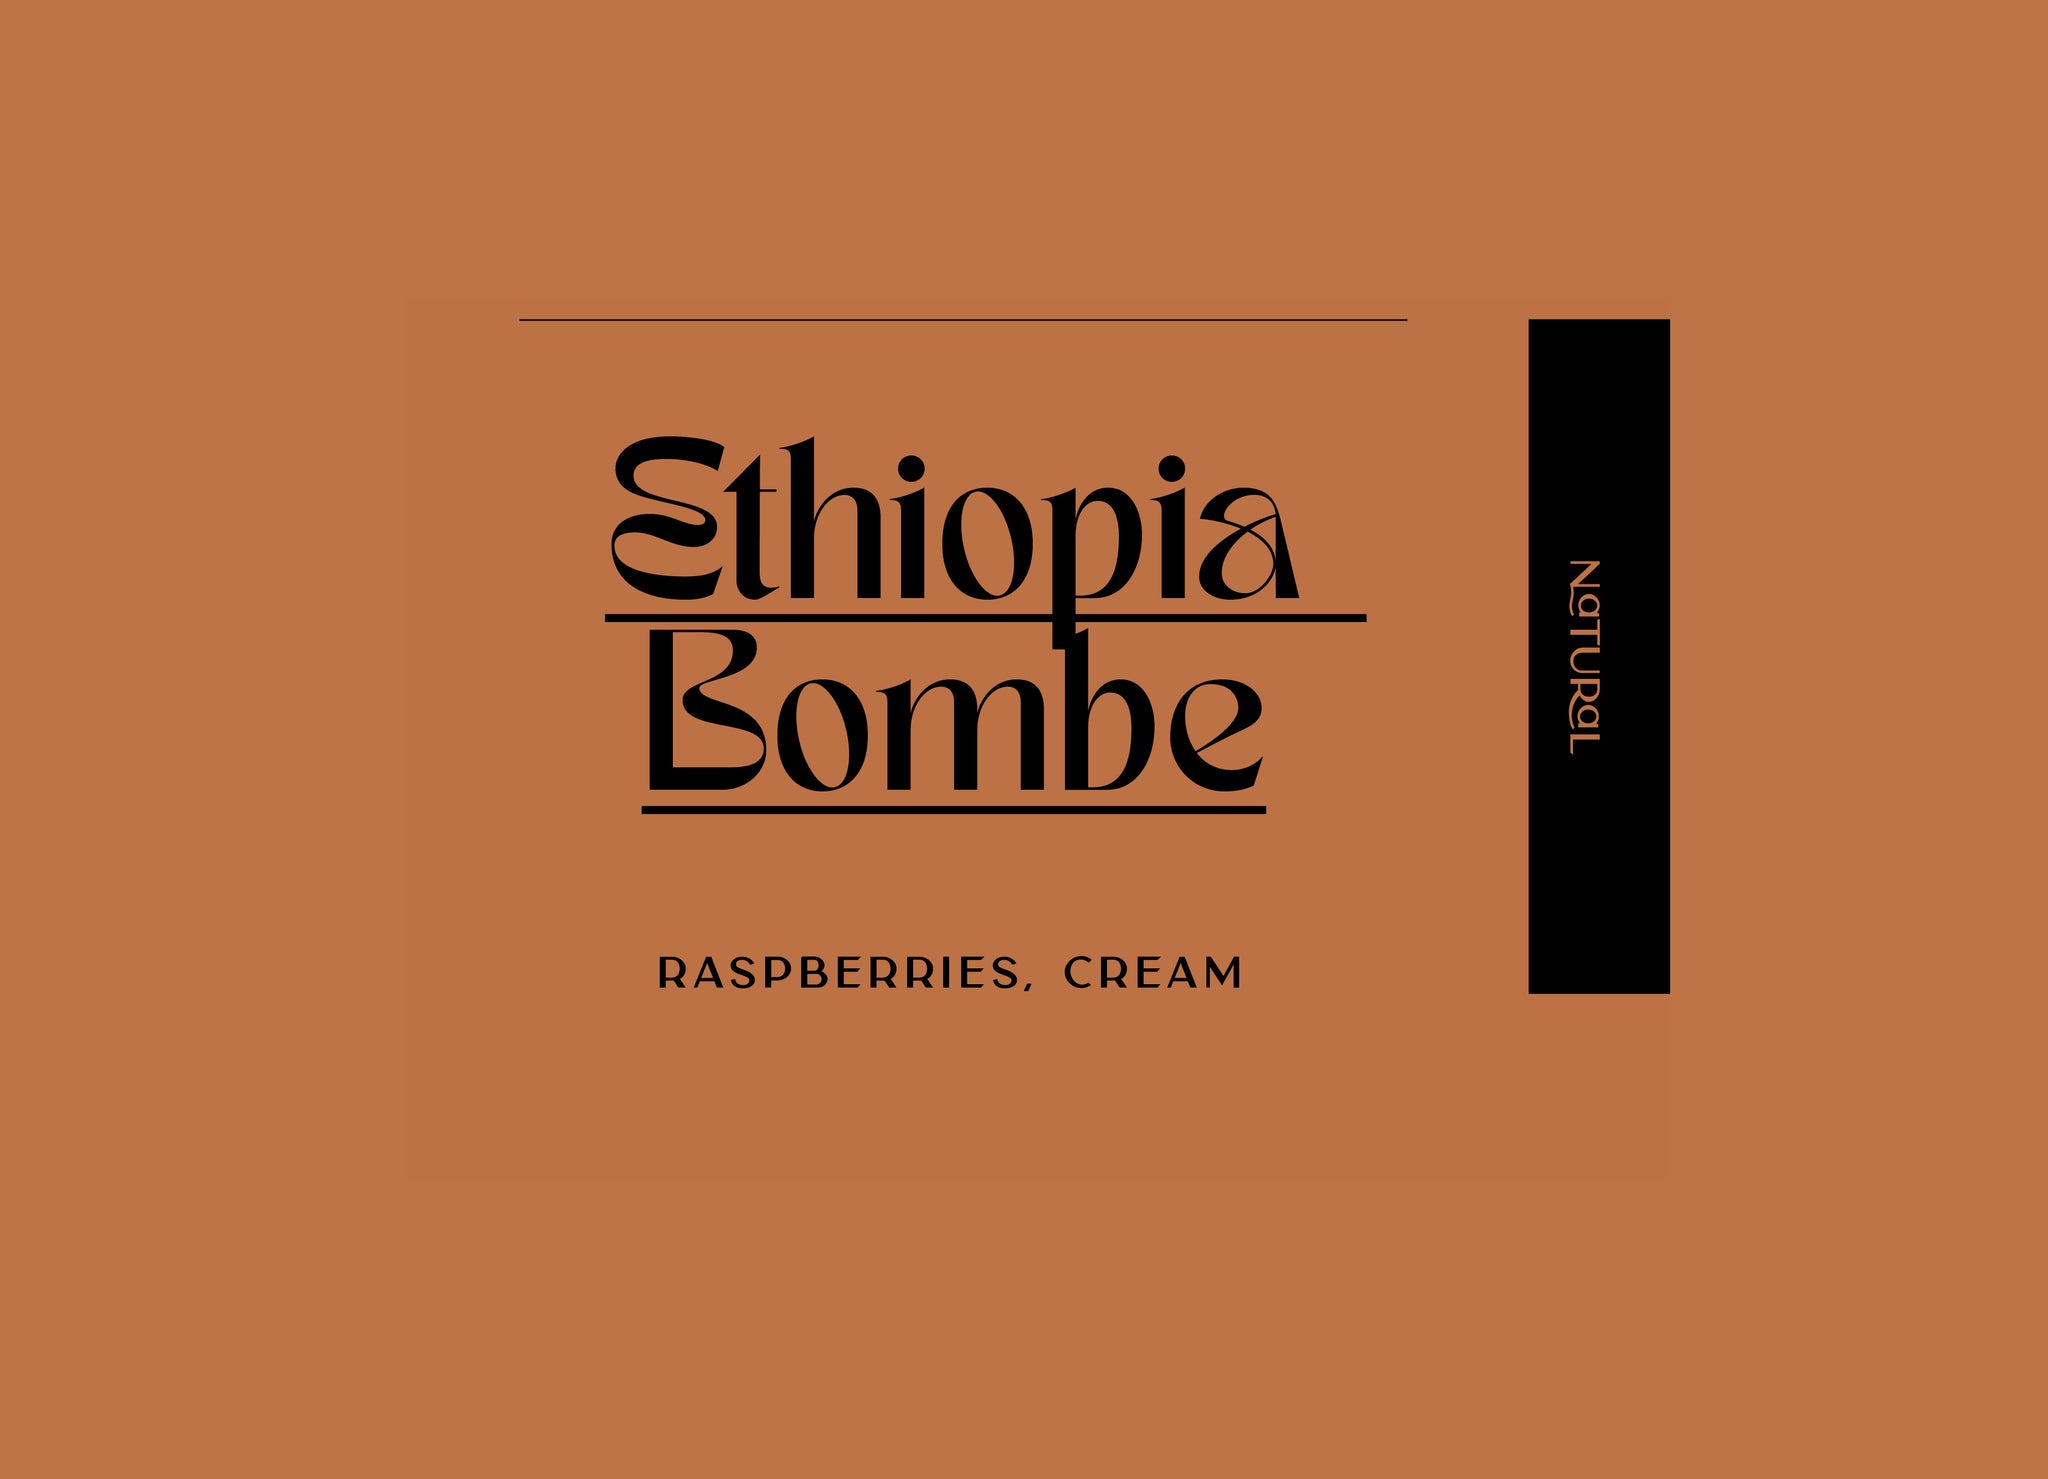 Ethiopia - Bombe